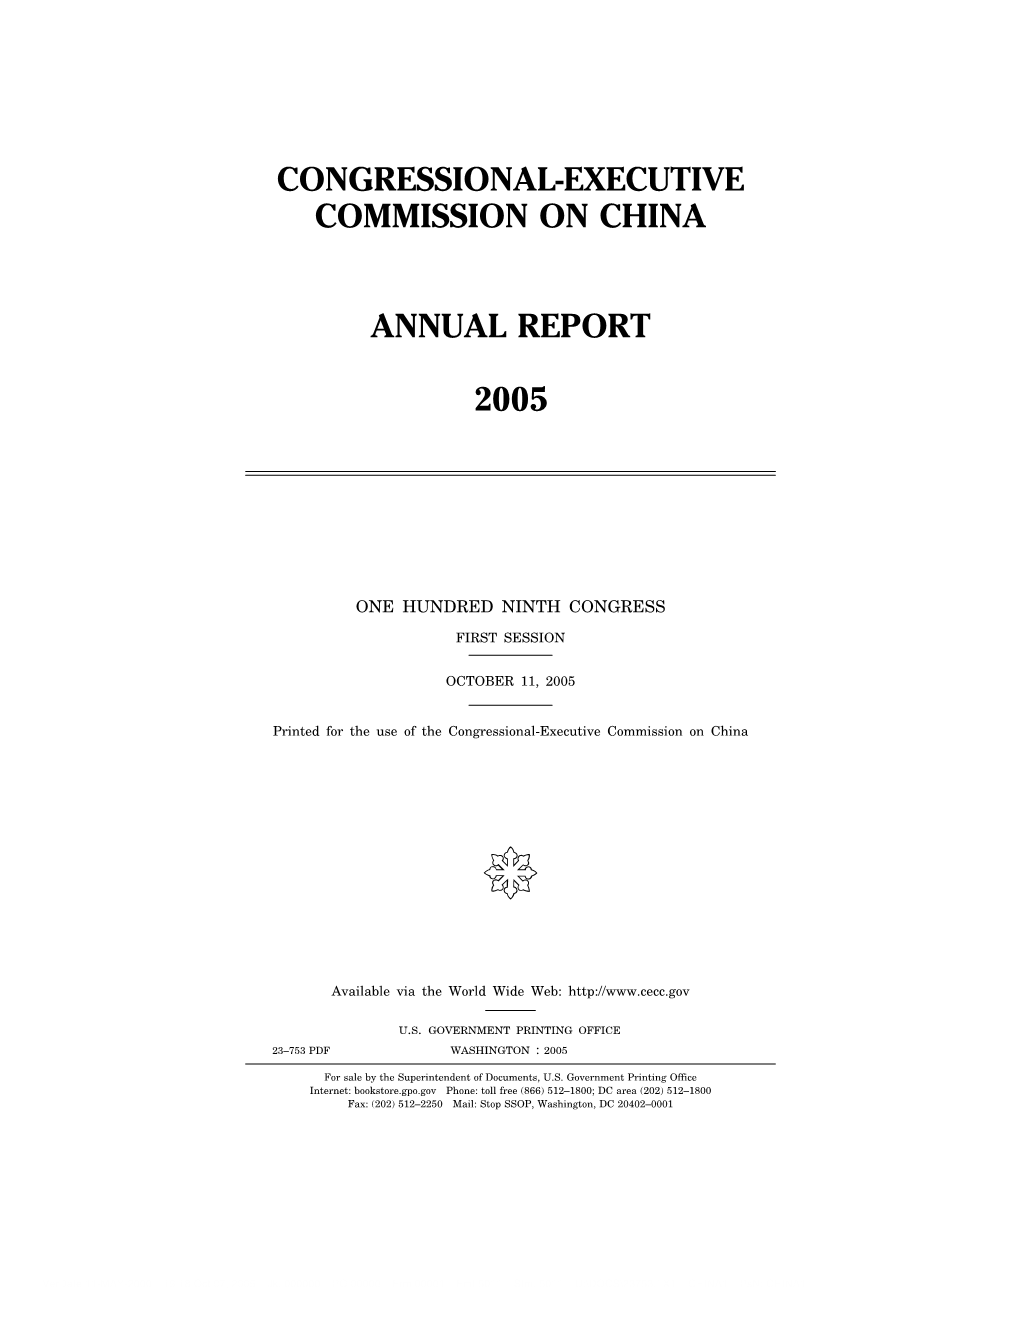 CECC 2005 Annual Report